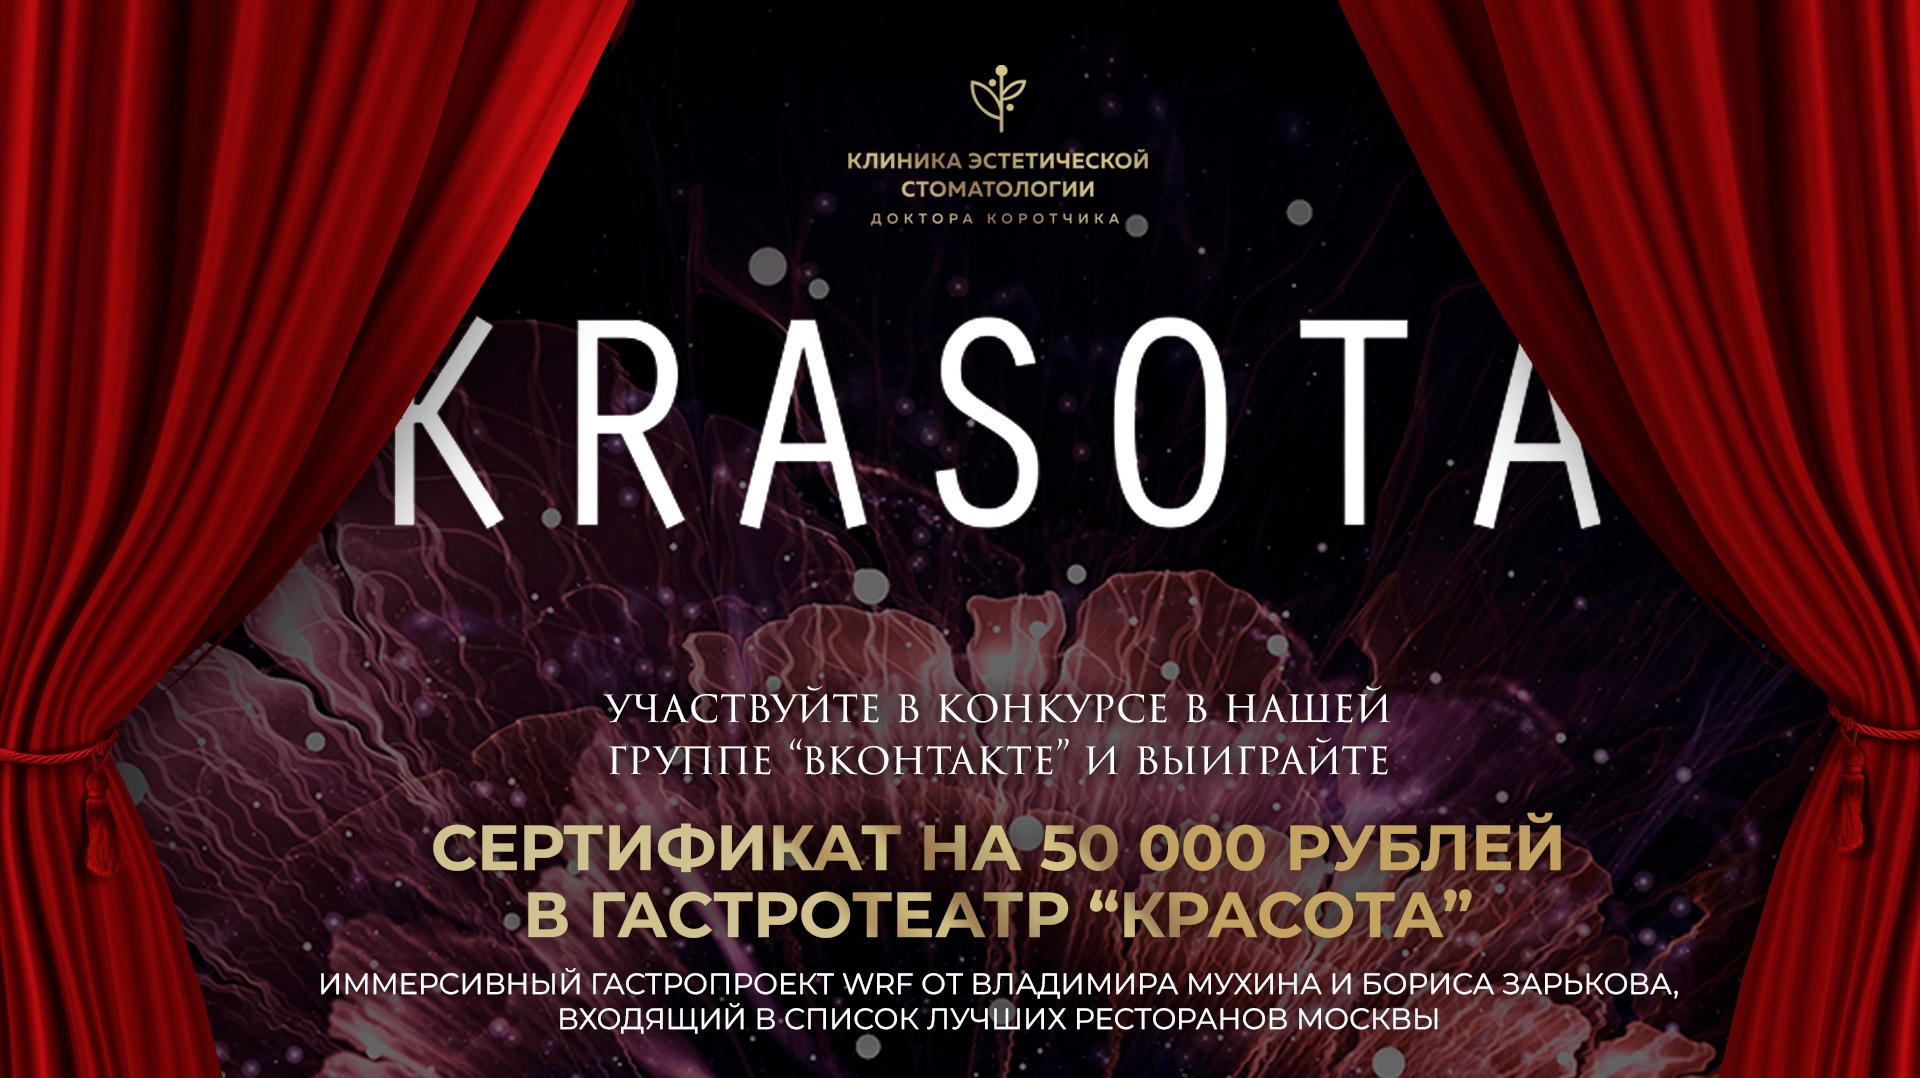 Дарим сертификат на 50 000 рублей в гастротеатр KRASOTA